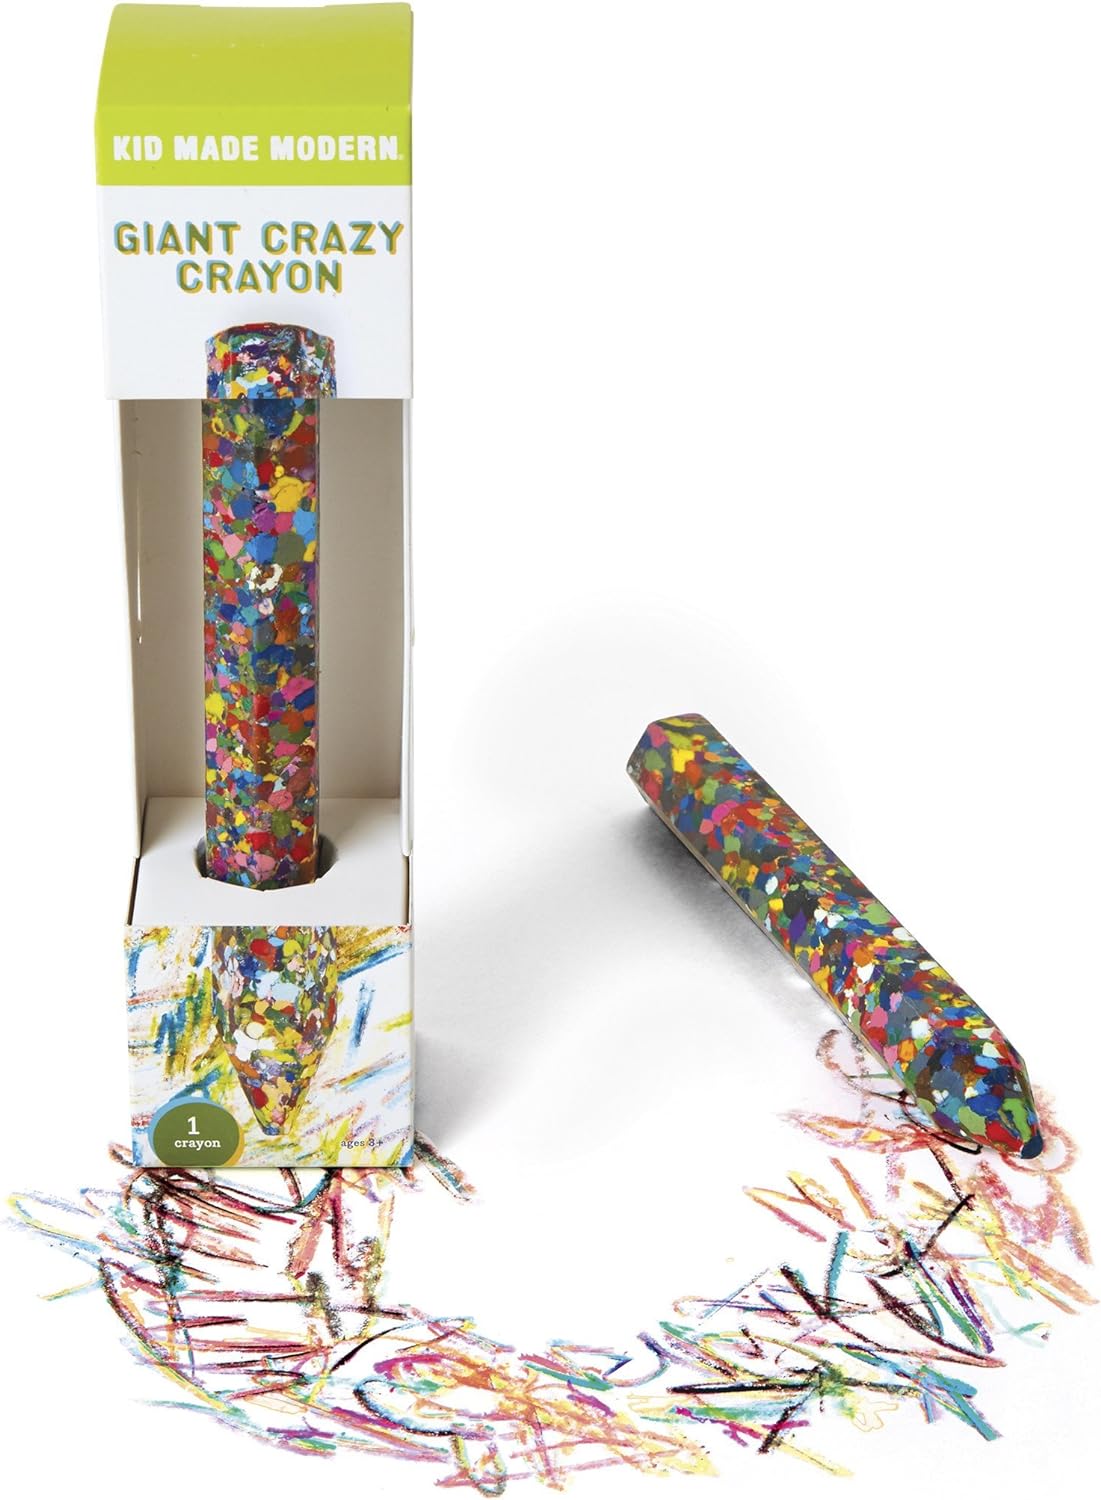 Giant Crazy Crayon